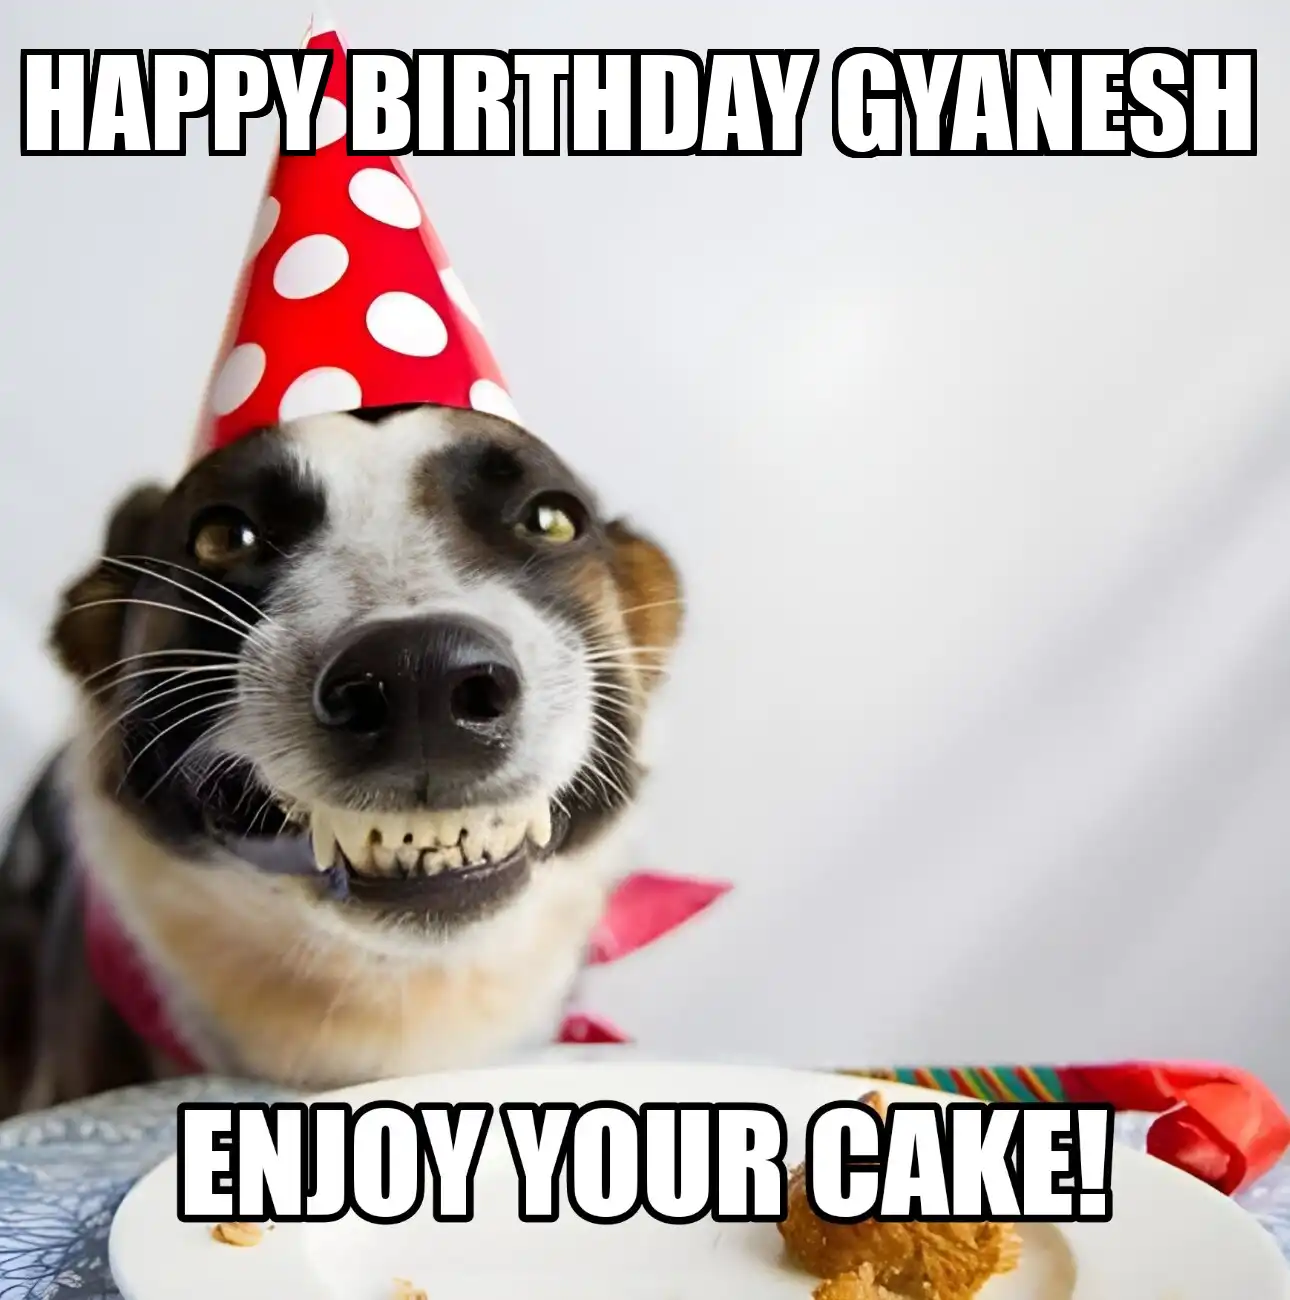 Happy Birthday Gyanesh Enjoy Your Cake Dog Meme